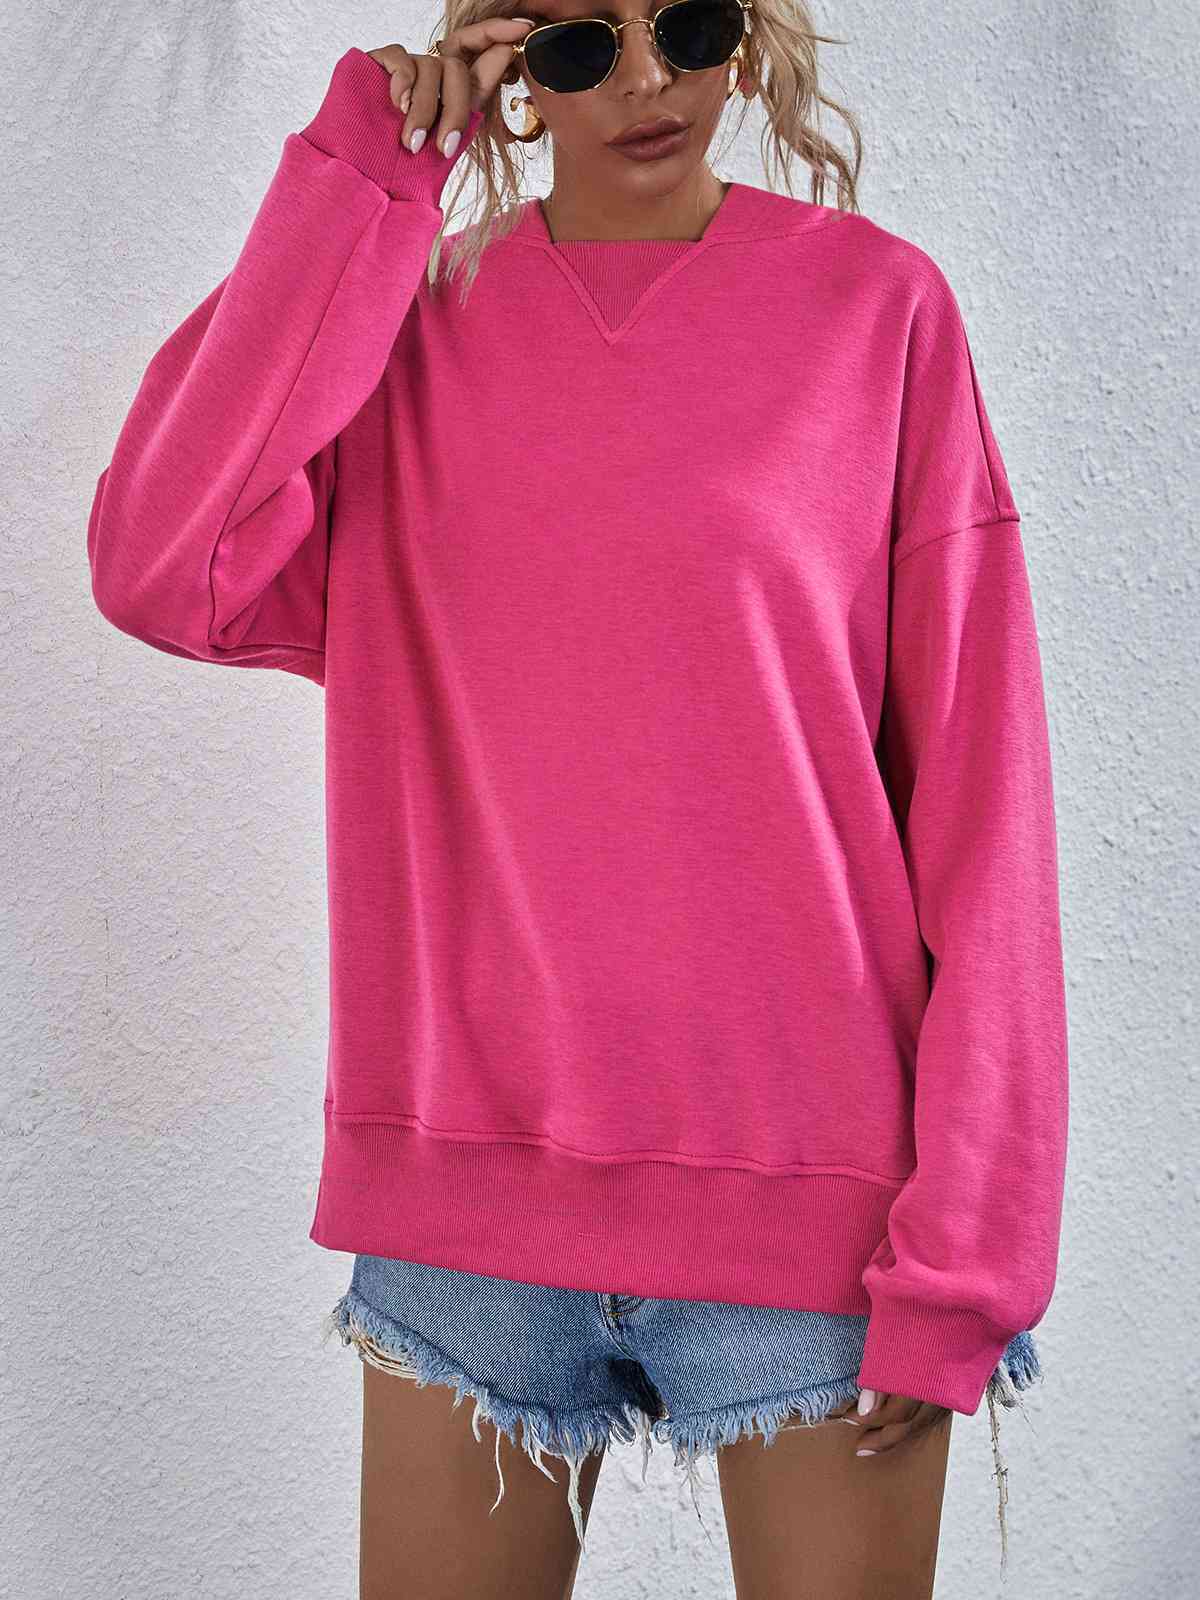 Dropped Shoulder Slit Hoodie - Pink / S - Hoodies & Sweatshirts - Shirts & Tops - 1 - 2024